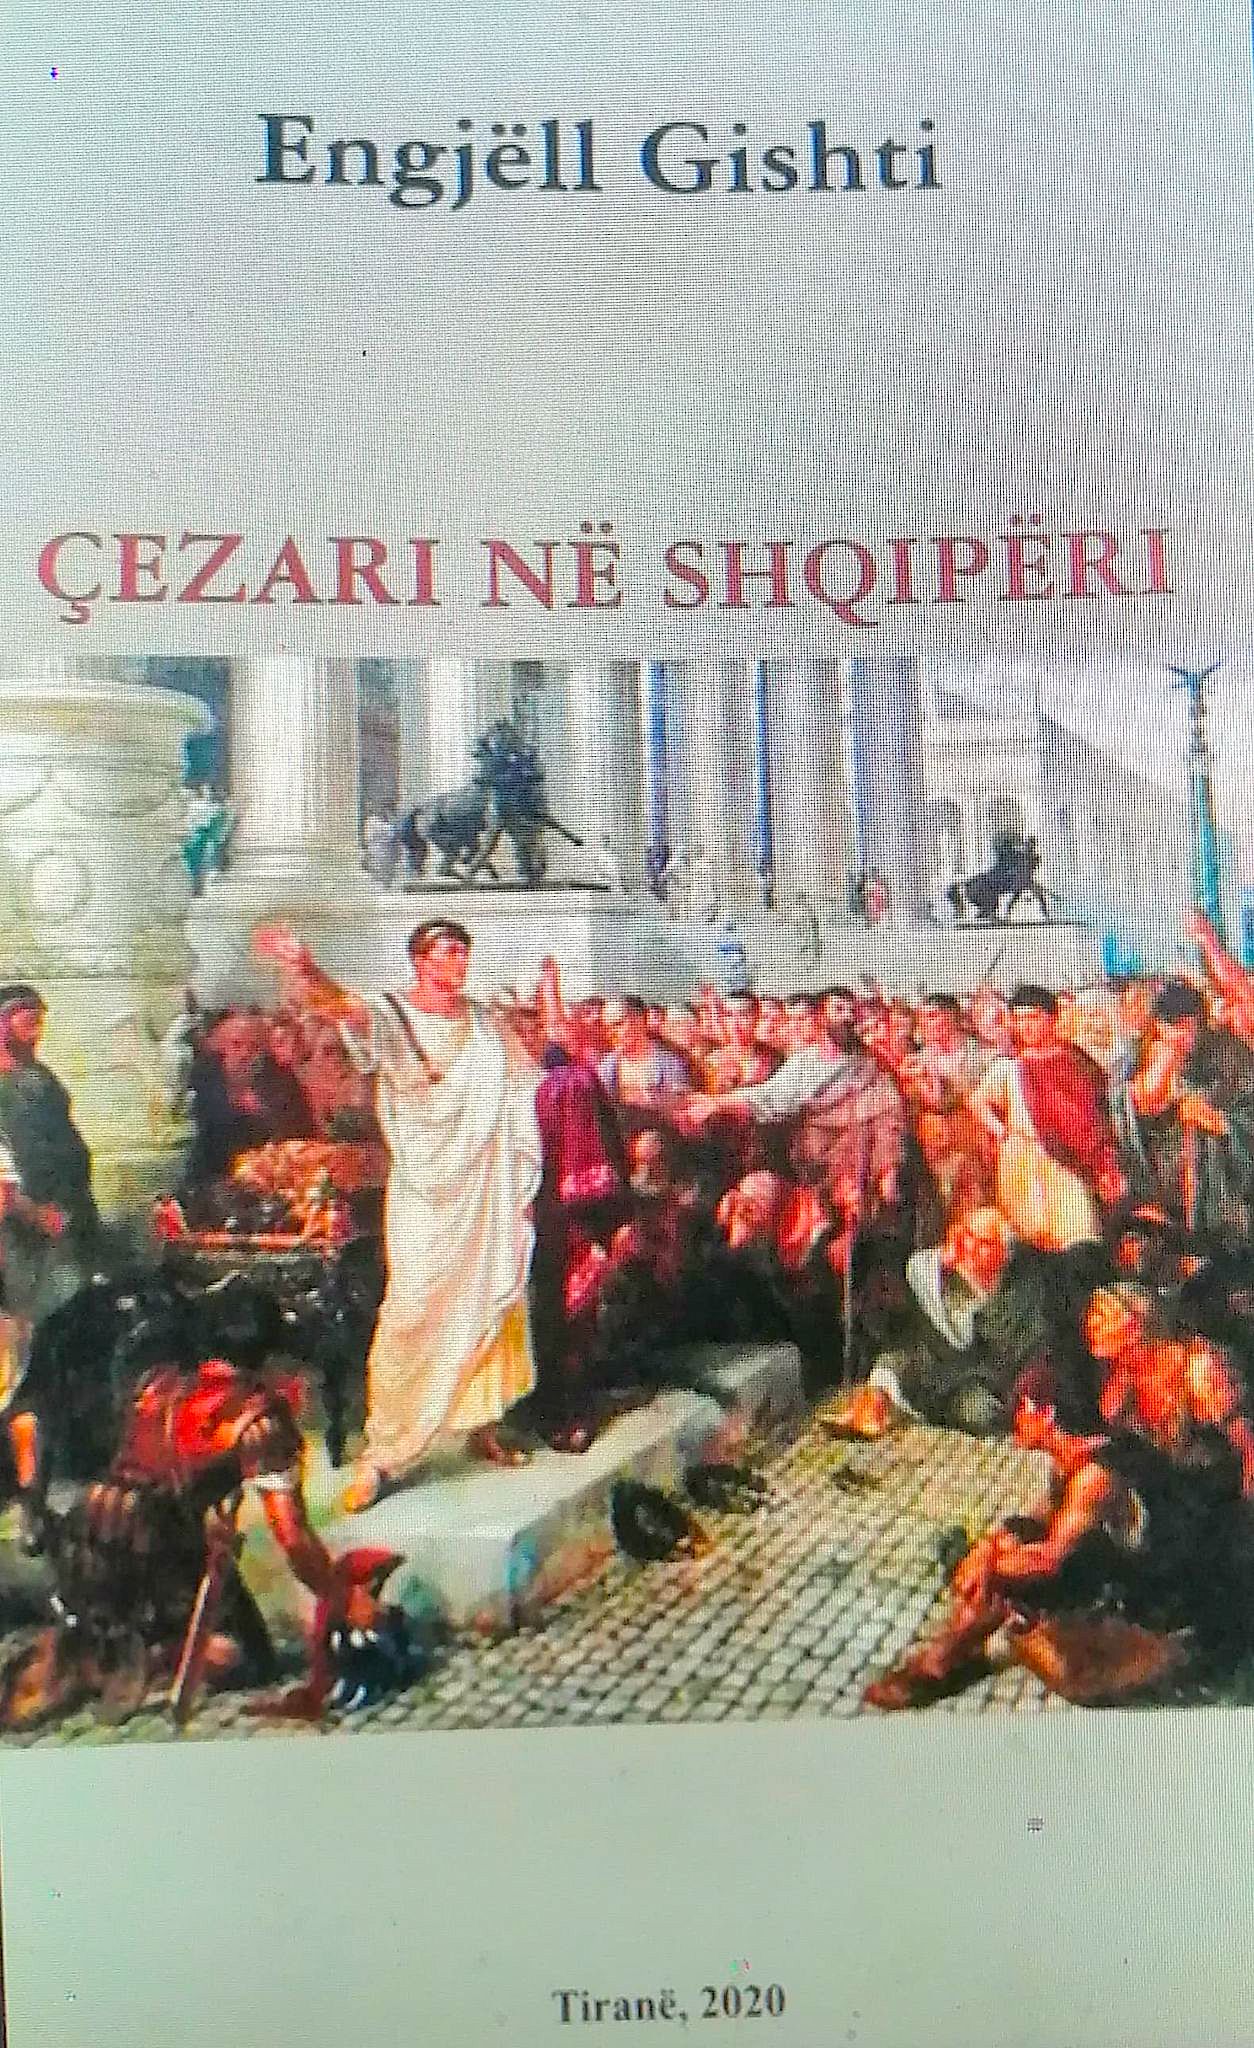 Cezari në Shqipëri - Engjëll Gishti 